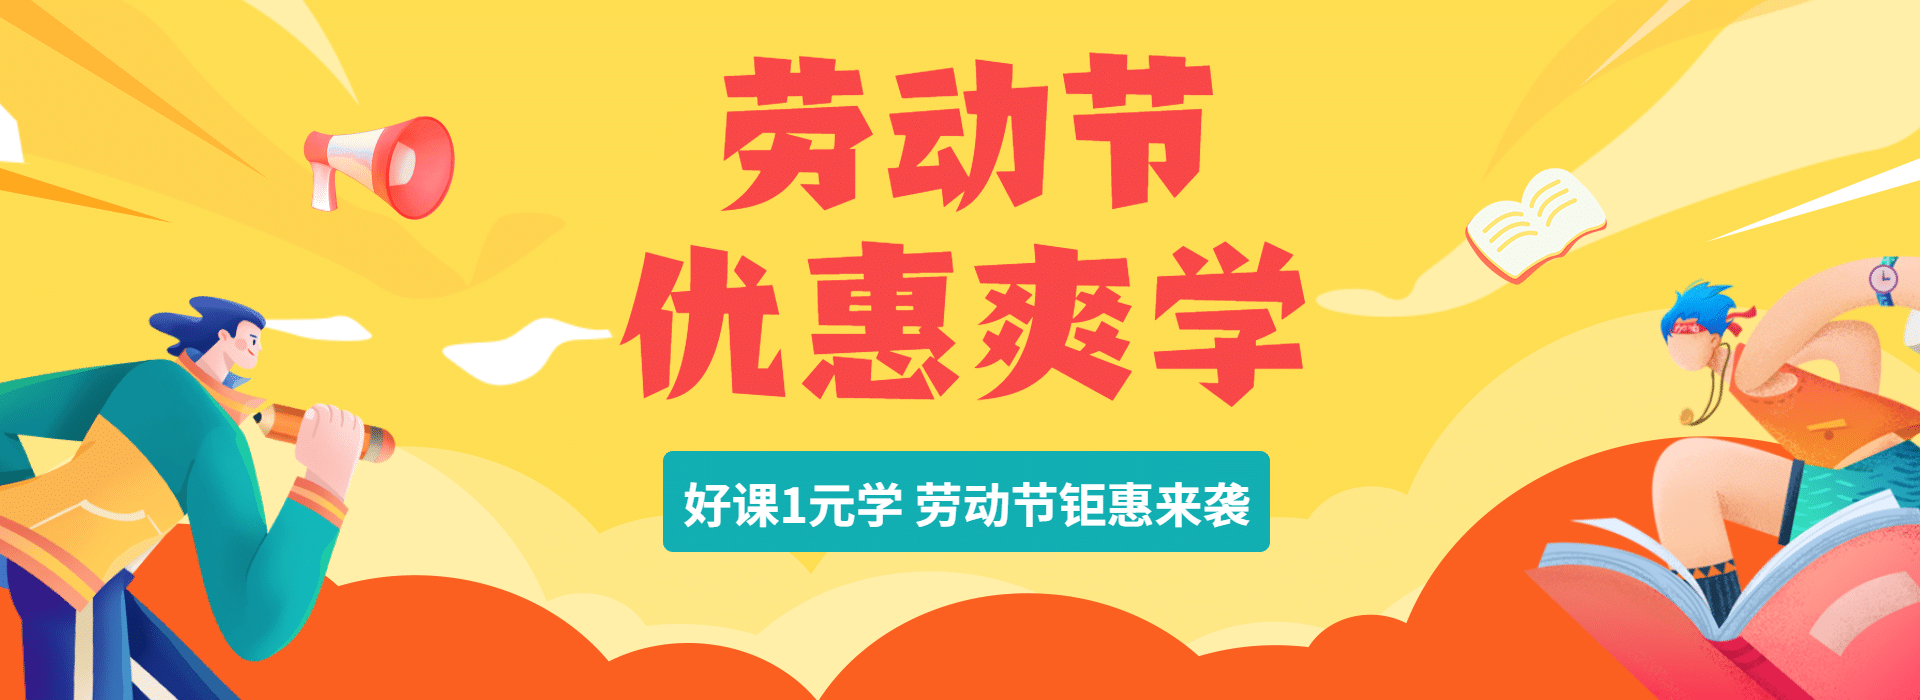 劳动节教育全屏横版海报banner预览效果